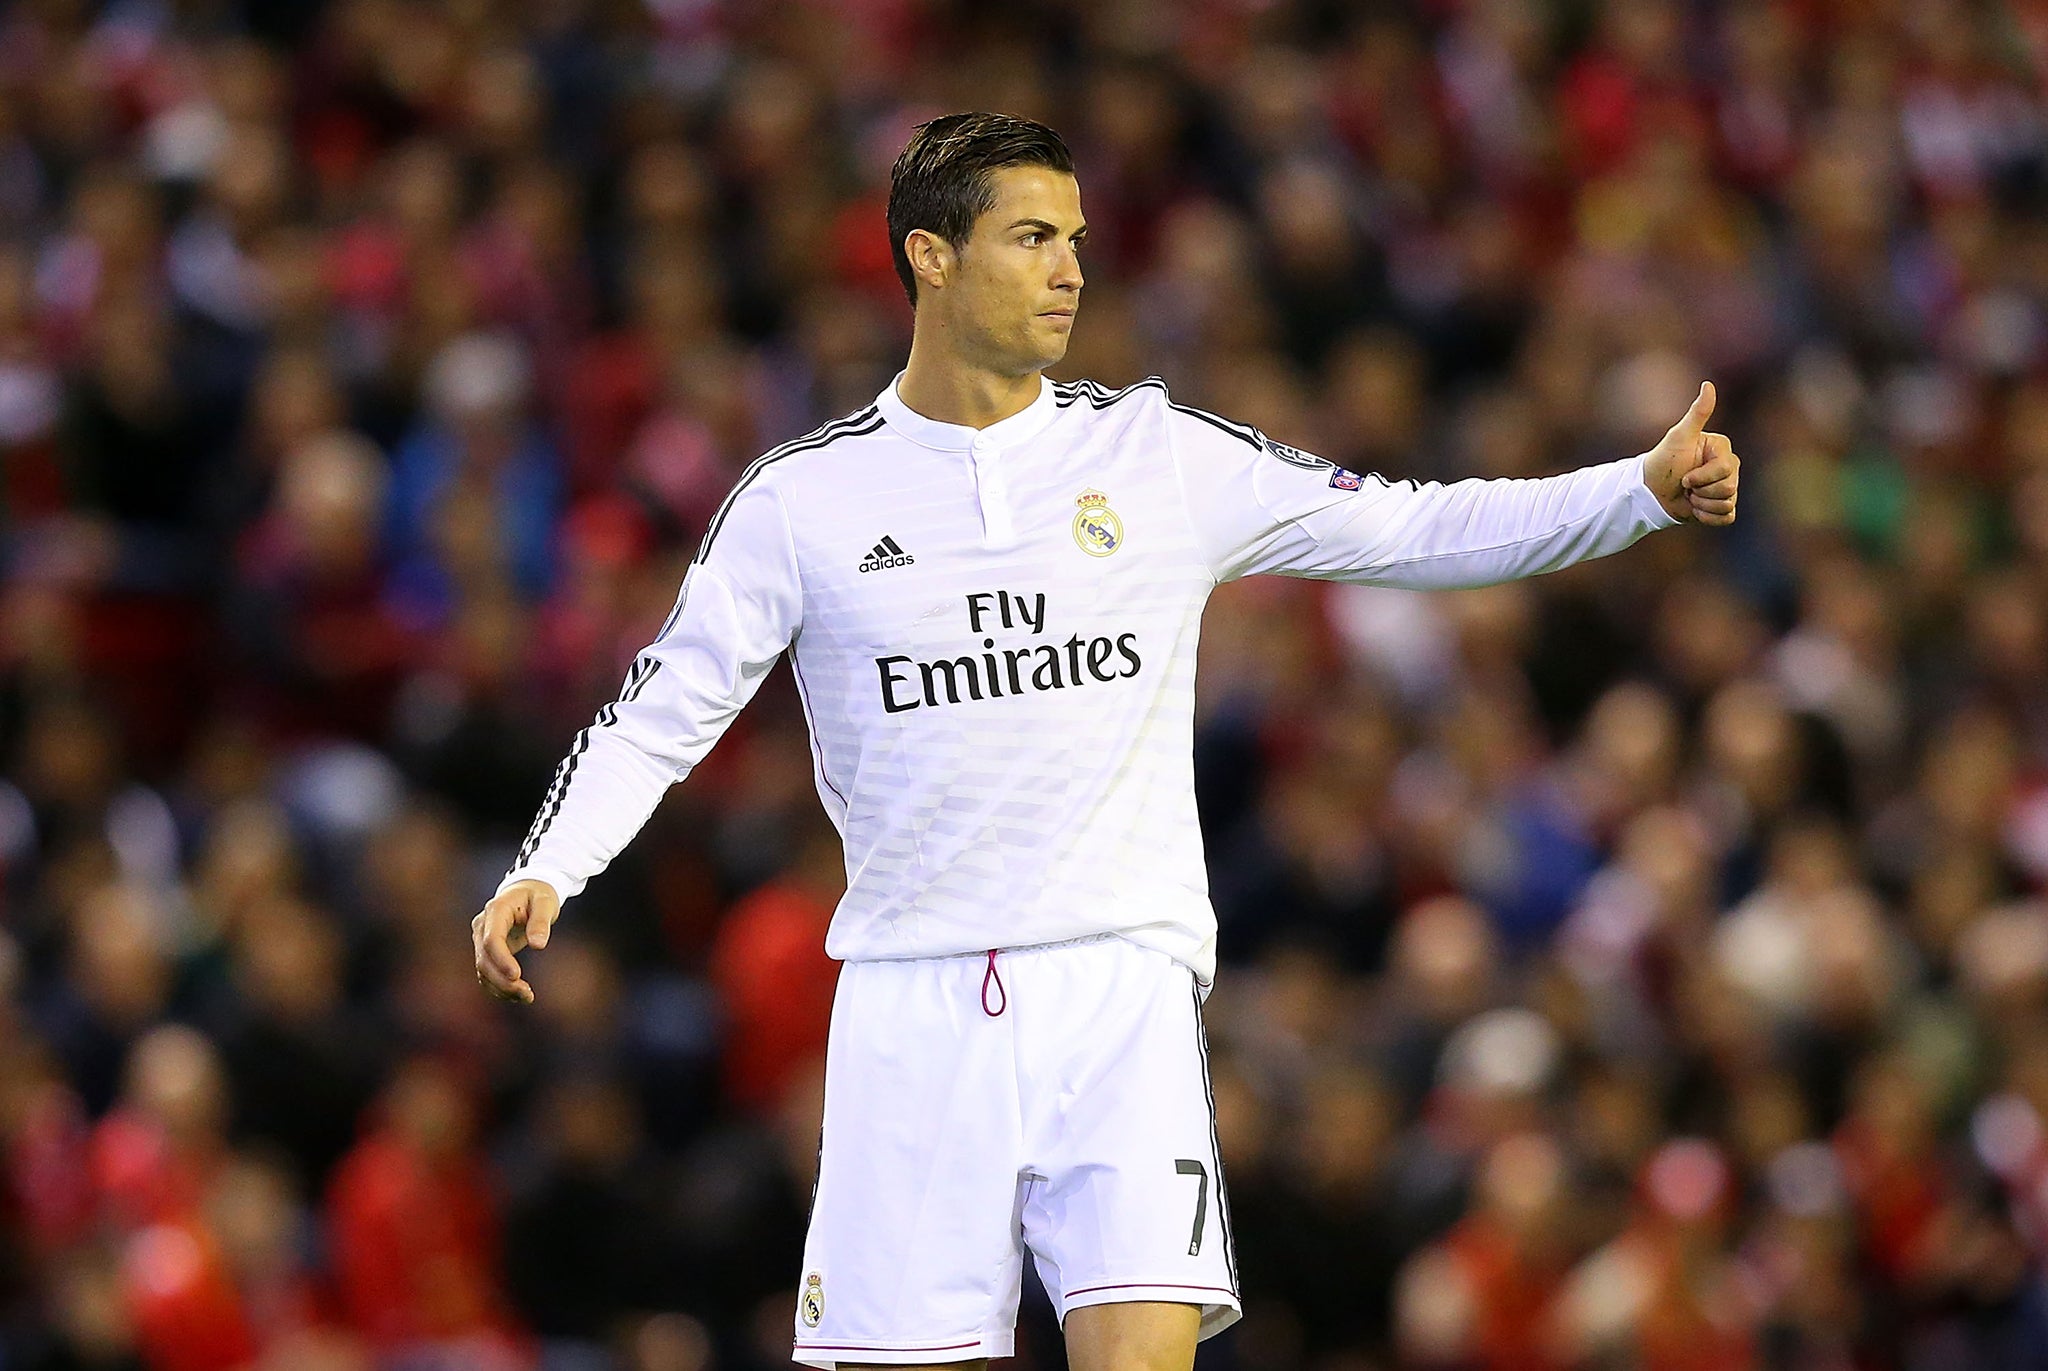 Real Madrid vs Barcelona: Cristiano Ronaldo to wear sparkly new